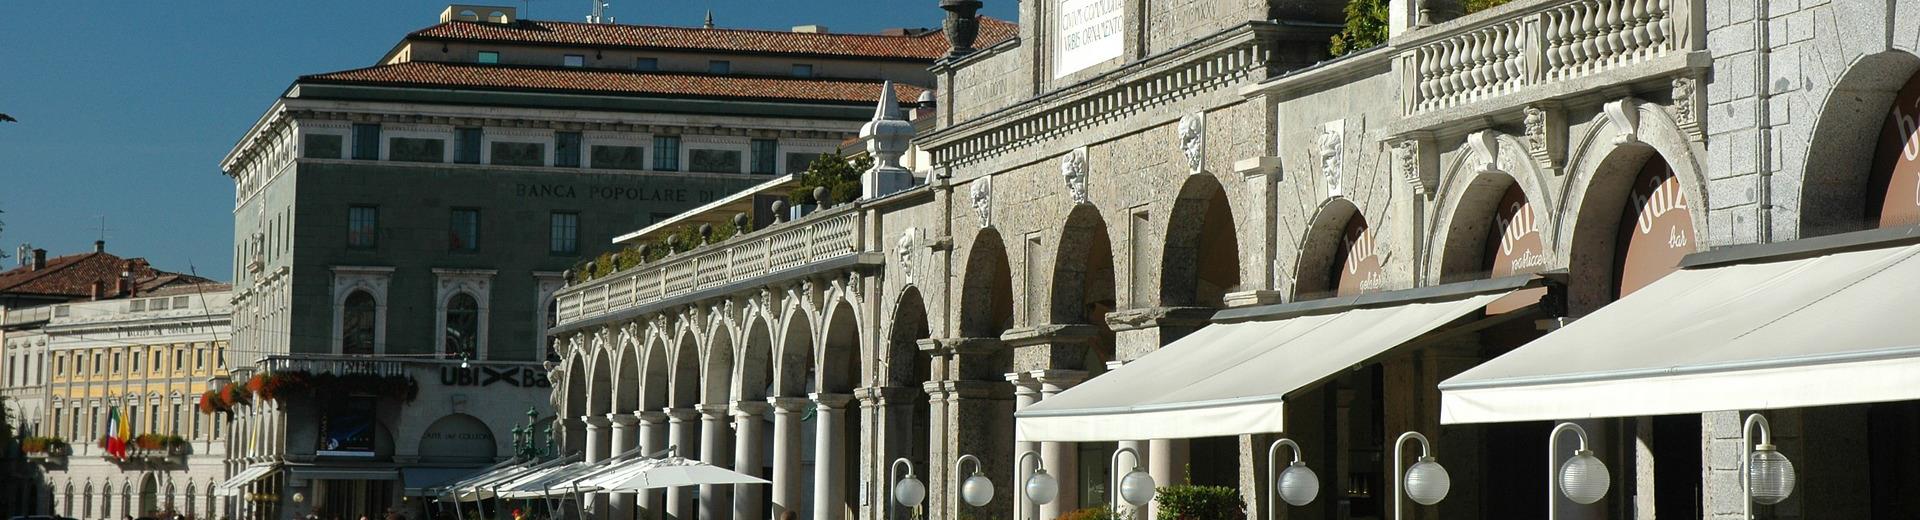 Scopri tutto quello che può offrire Bergamo: shopping, arte, relax, buon cibo e molto altro! Prenota subito BW Hotel Piemontese, 4 stelle nel centro di Bergamo!